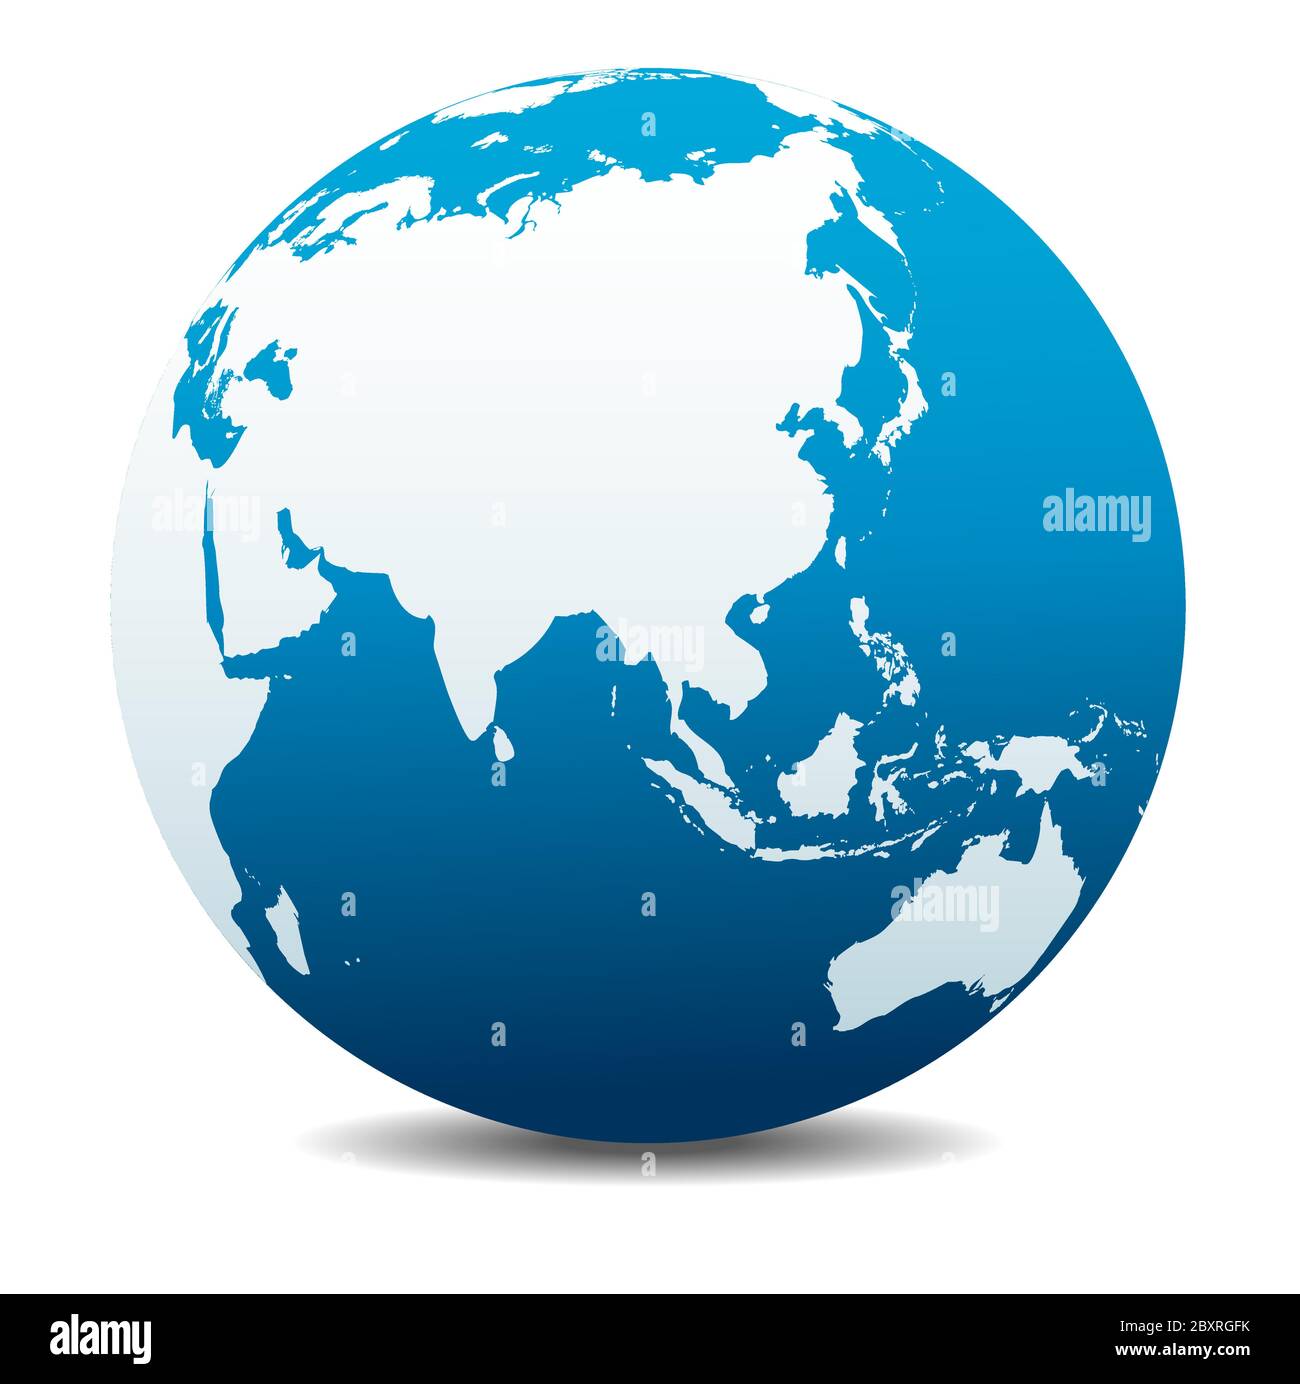 Cina e Asia. Icona Mappa vettoriale del globo mondiale, Terra. Tutti gli elementi si trovano su singoli livelli nel file vettoriale. Illustrazione Vettoriale